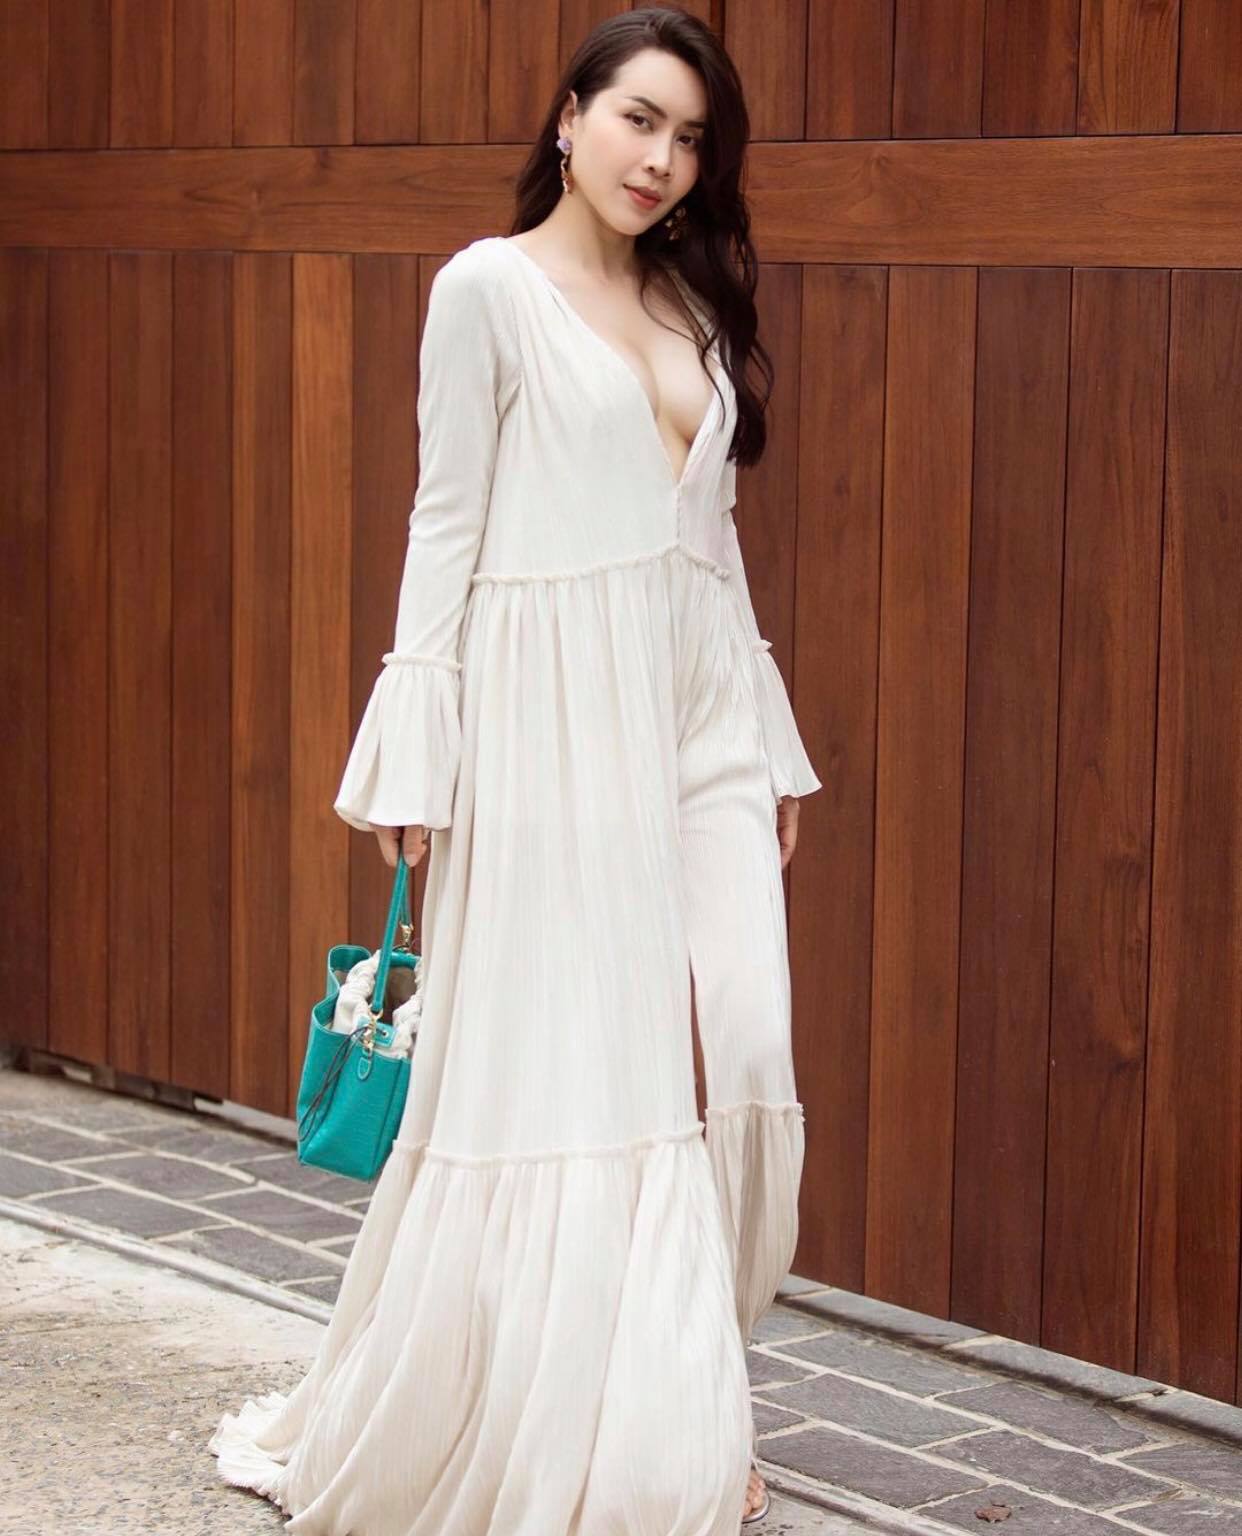 Lưu Hương Giang chọn mặc chiếc váy trắng dài mềm mại.